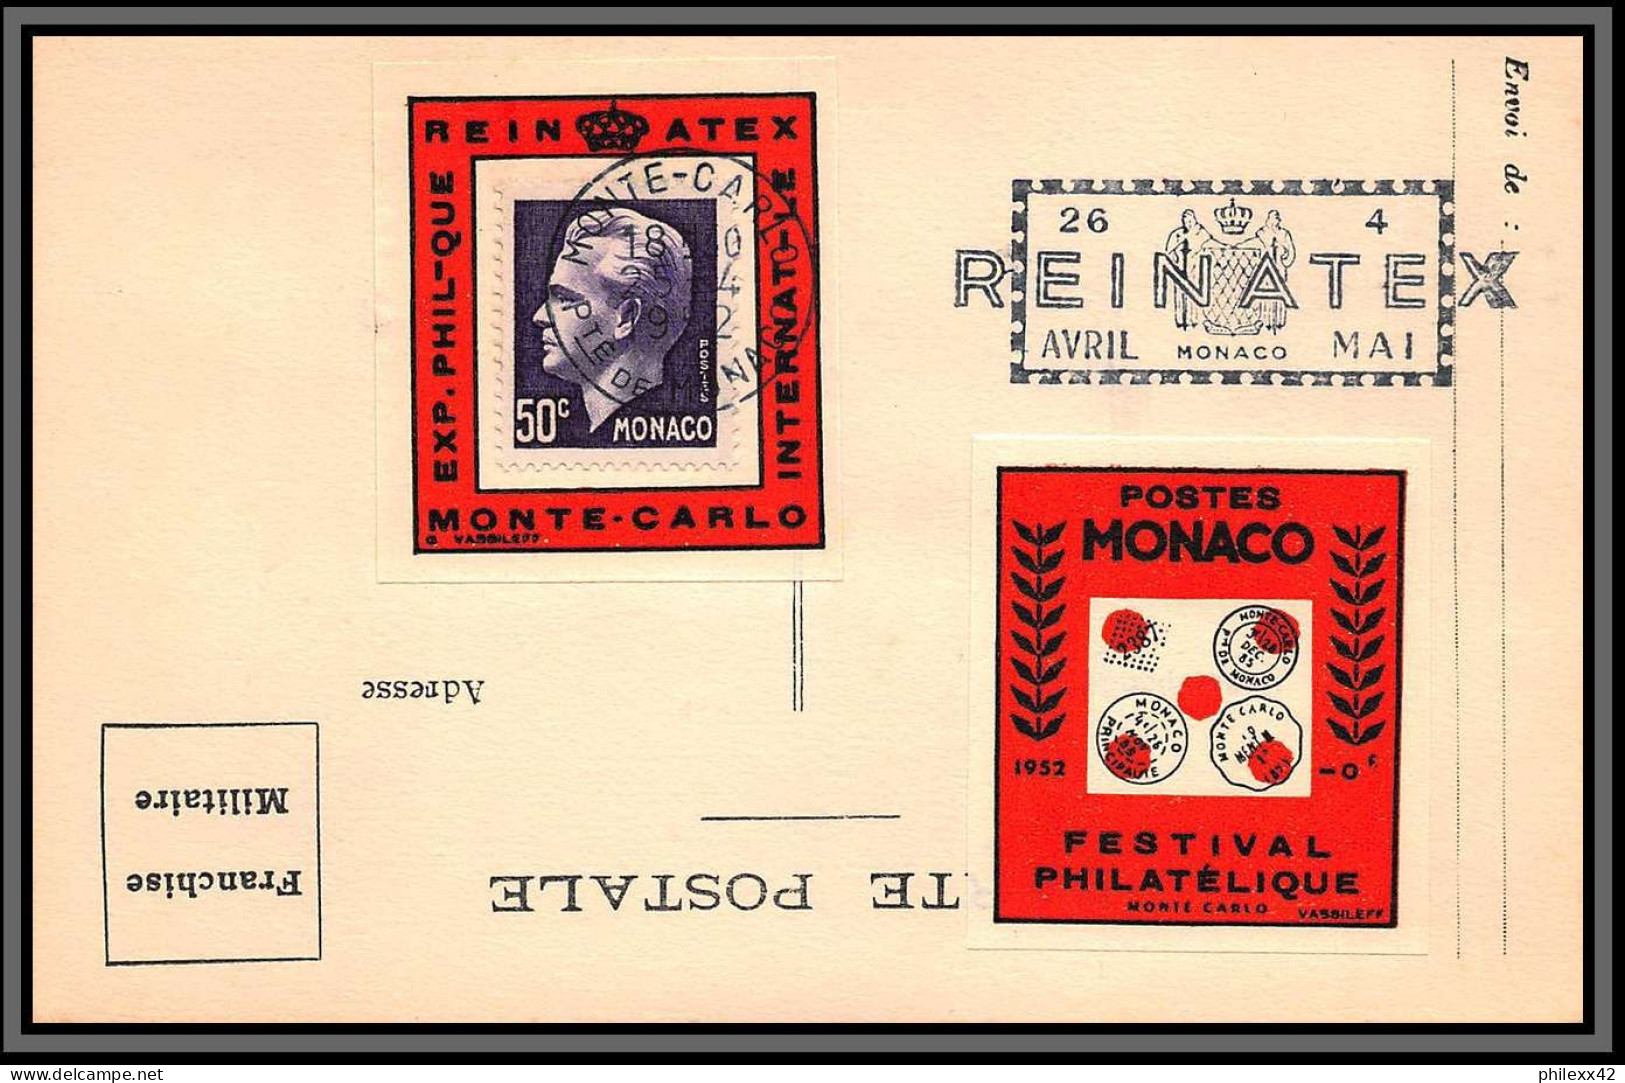 74926 (1) REINATEX 1952 joli lot collection vignette porte timbre stamp holder lettre cover Monaco france italia